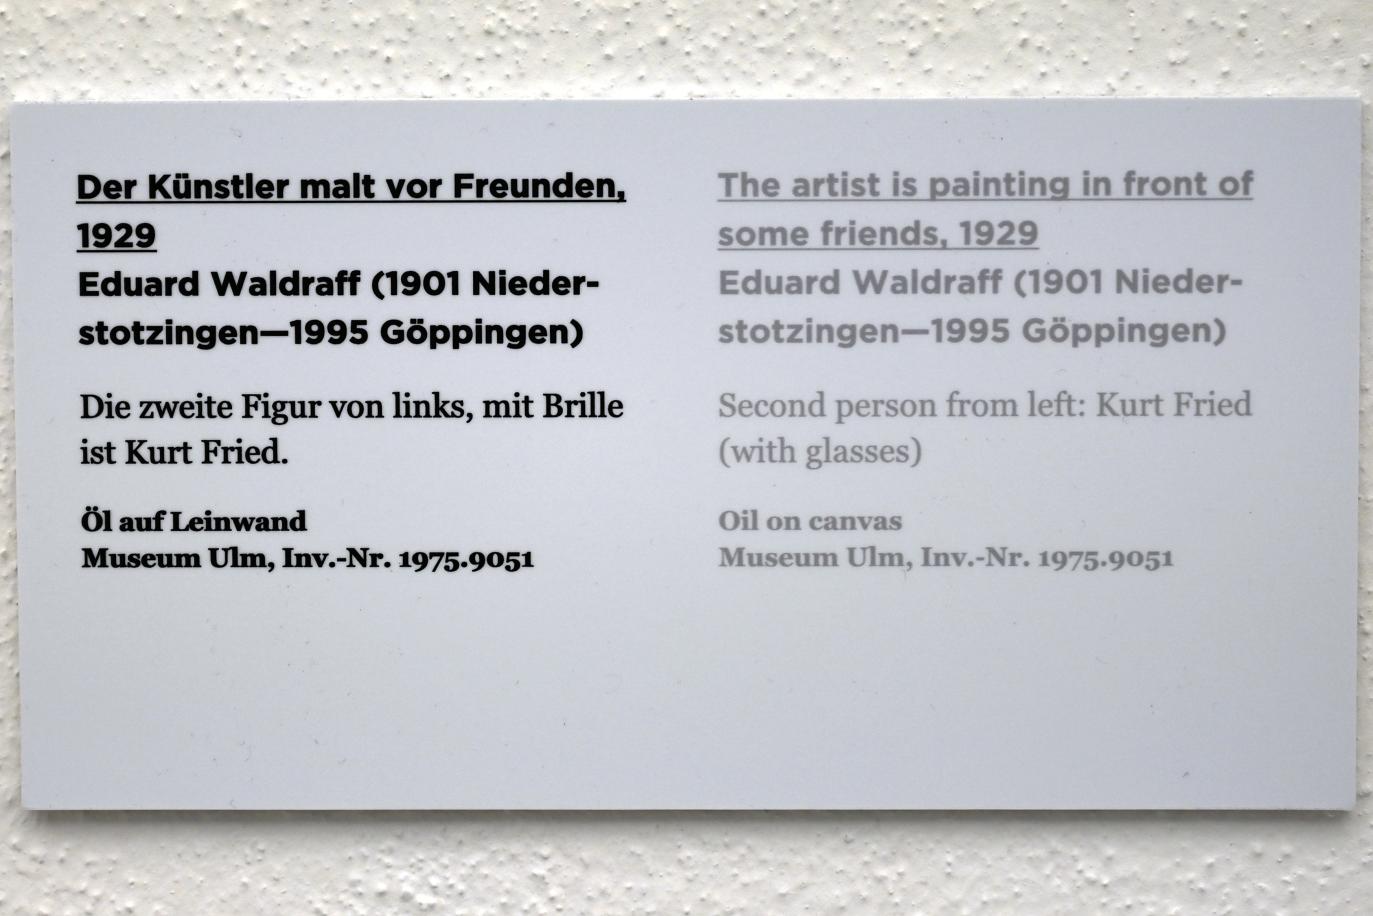 Eduard Waldraff (1929), Der Künstler malt vor Freunden, Ulm, Museum Ulm, Saal 7d, 1929, Bild 2/2